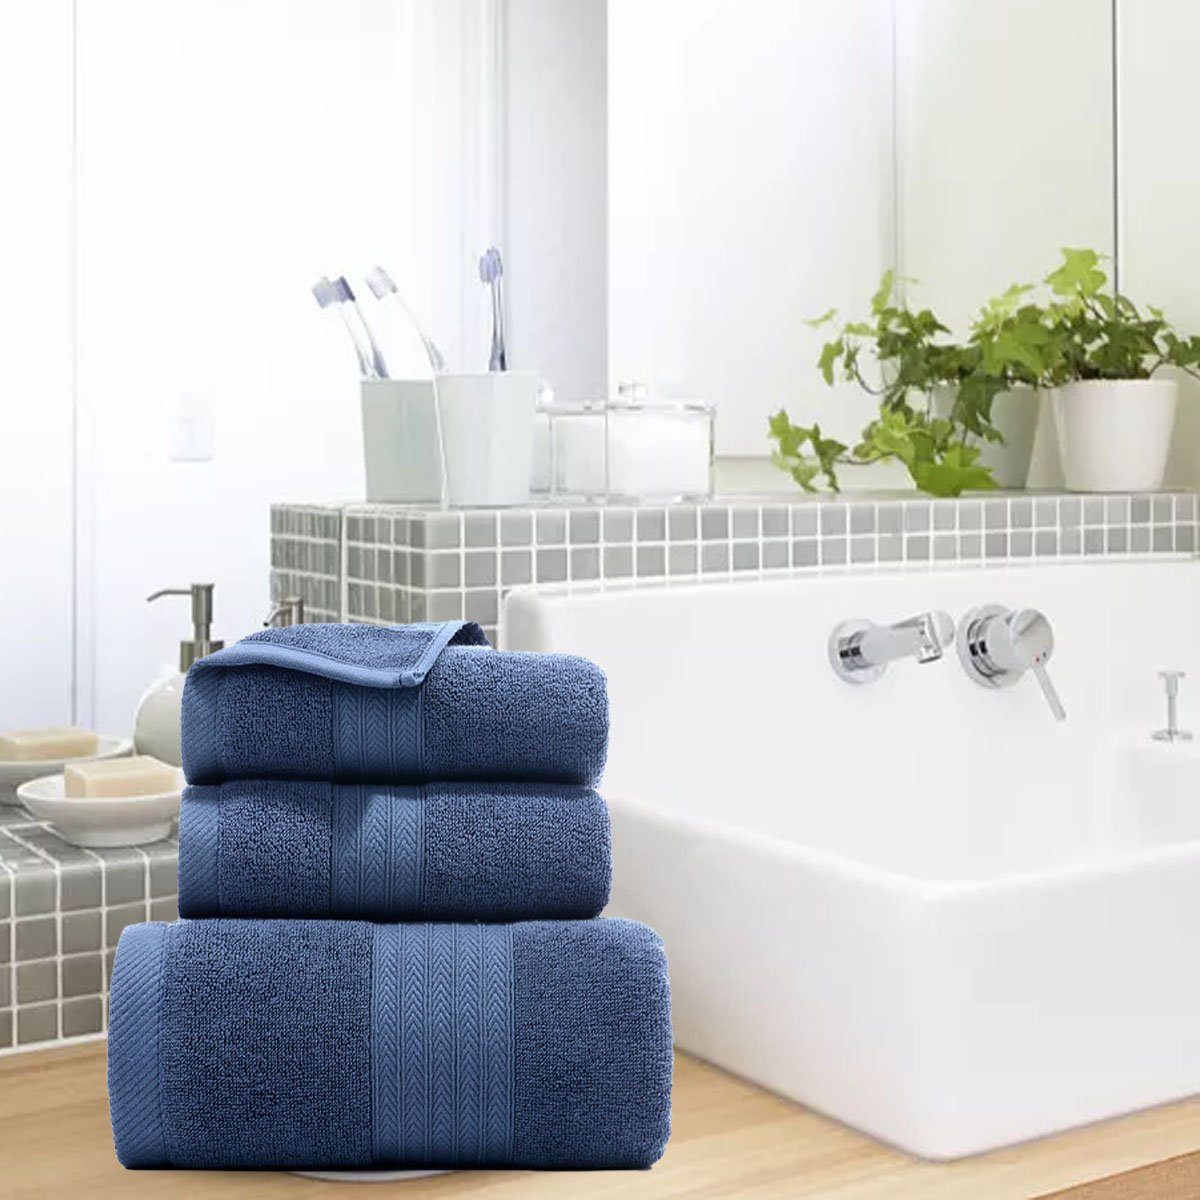 Jormftte Handtuch Set Handtücher Set-2xHandtuch,1xBadetuch,saugfähig und zu Blau weich,für Hause